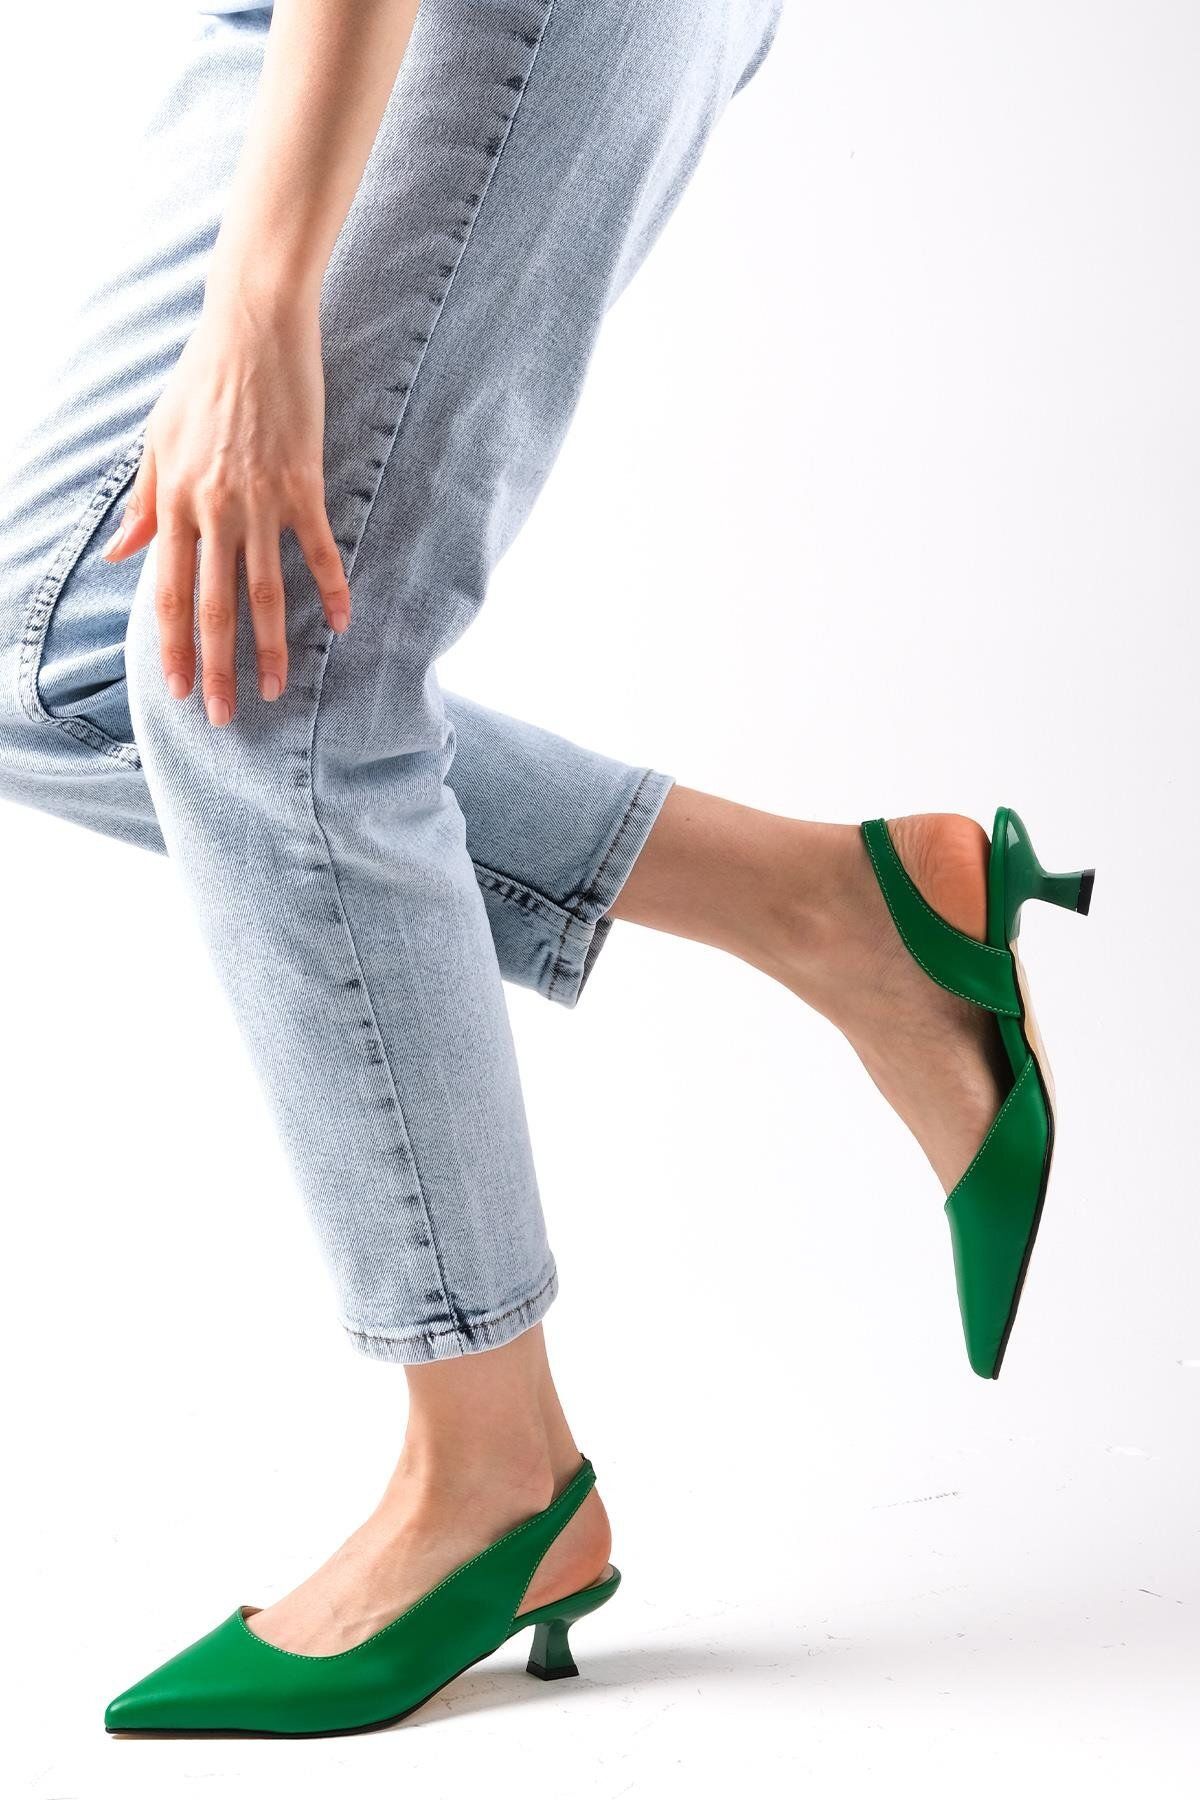 Mio Gusto Mitzie Yeşil Renk Arkası Açık Kısa Topuklu Kadın Ayakkabı